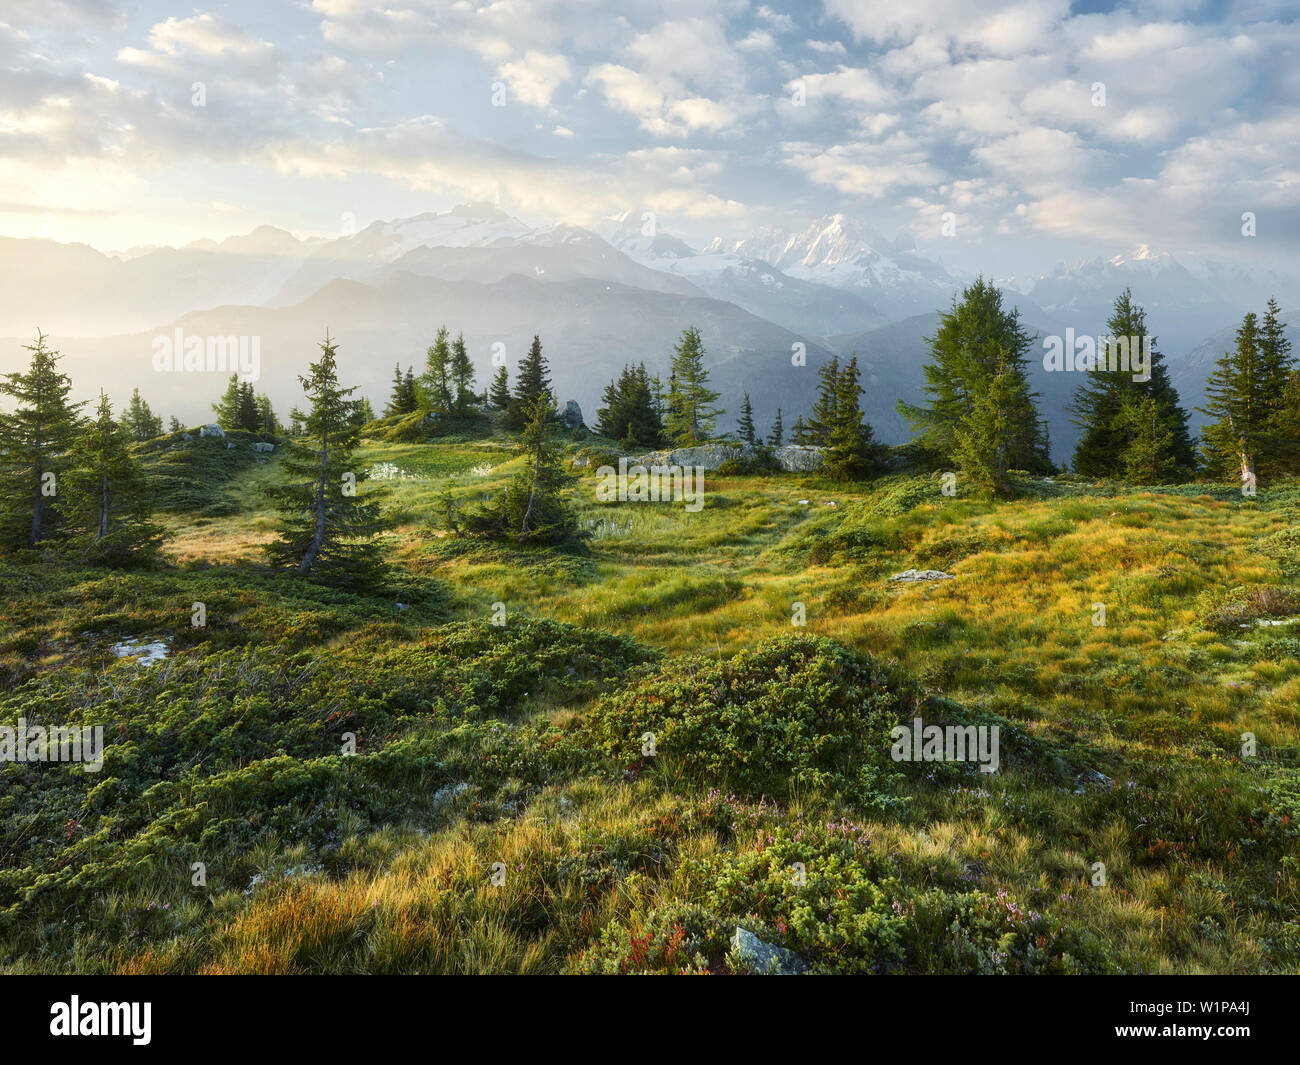 Émosson, Wallis, Schweiz (Vordergrund), Aiguille Verte, Haute-Savoie, Frankreich (Hintergrund) Stock Photo